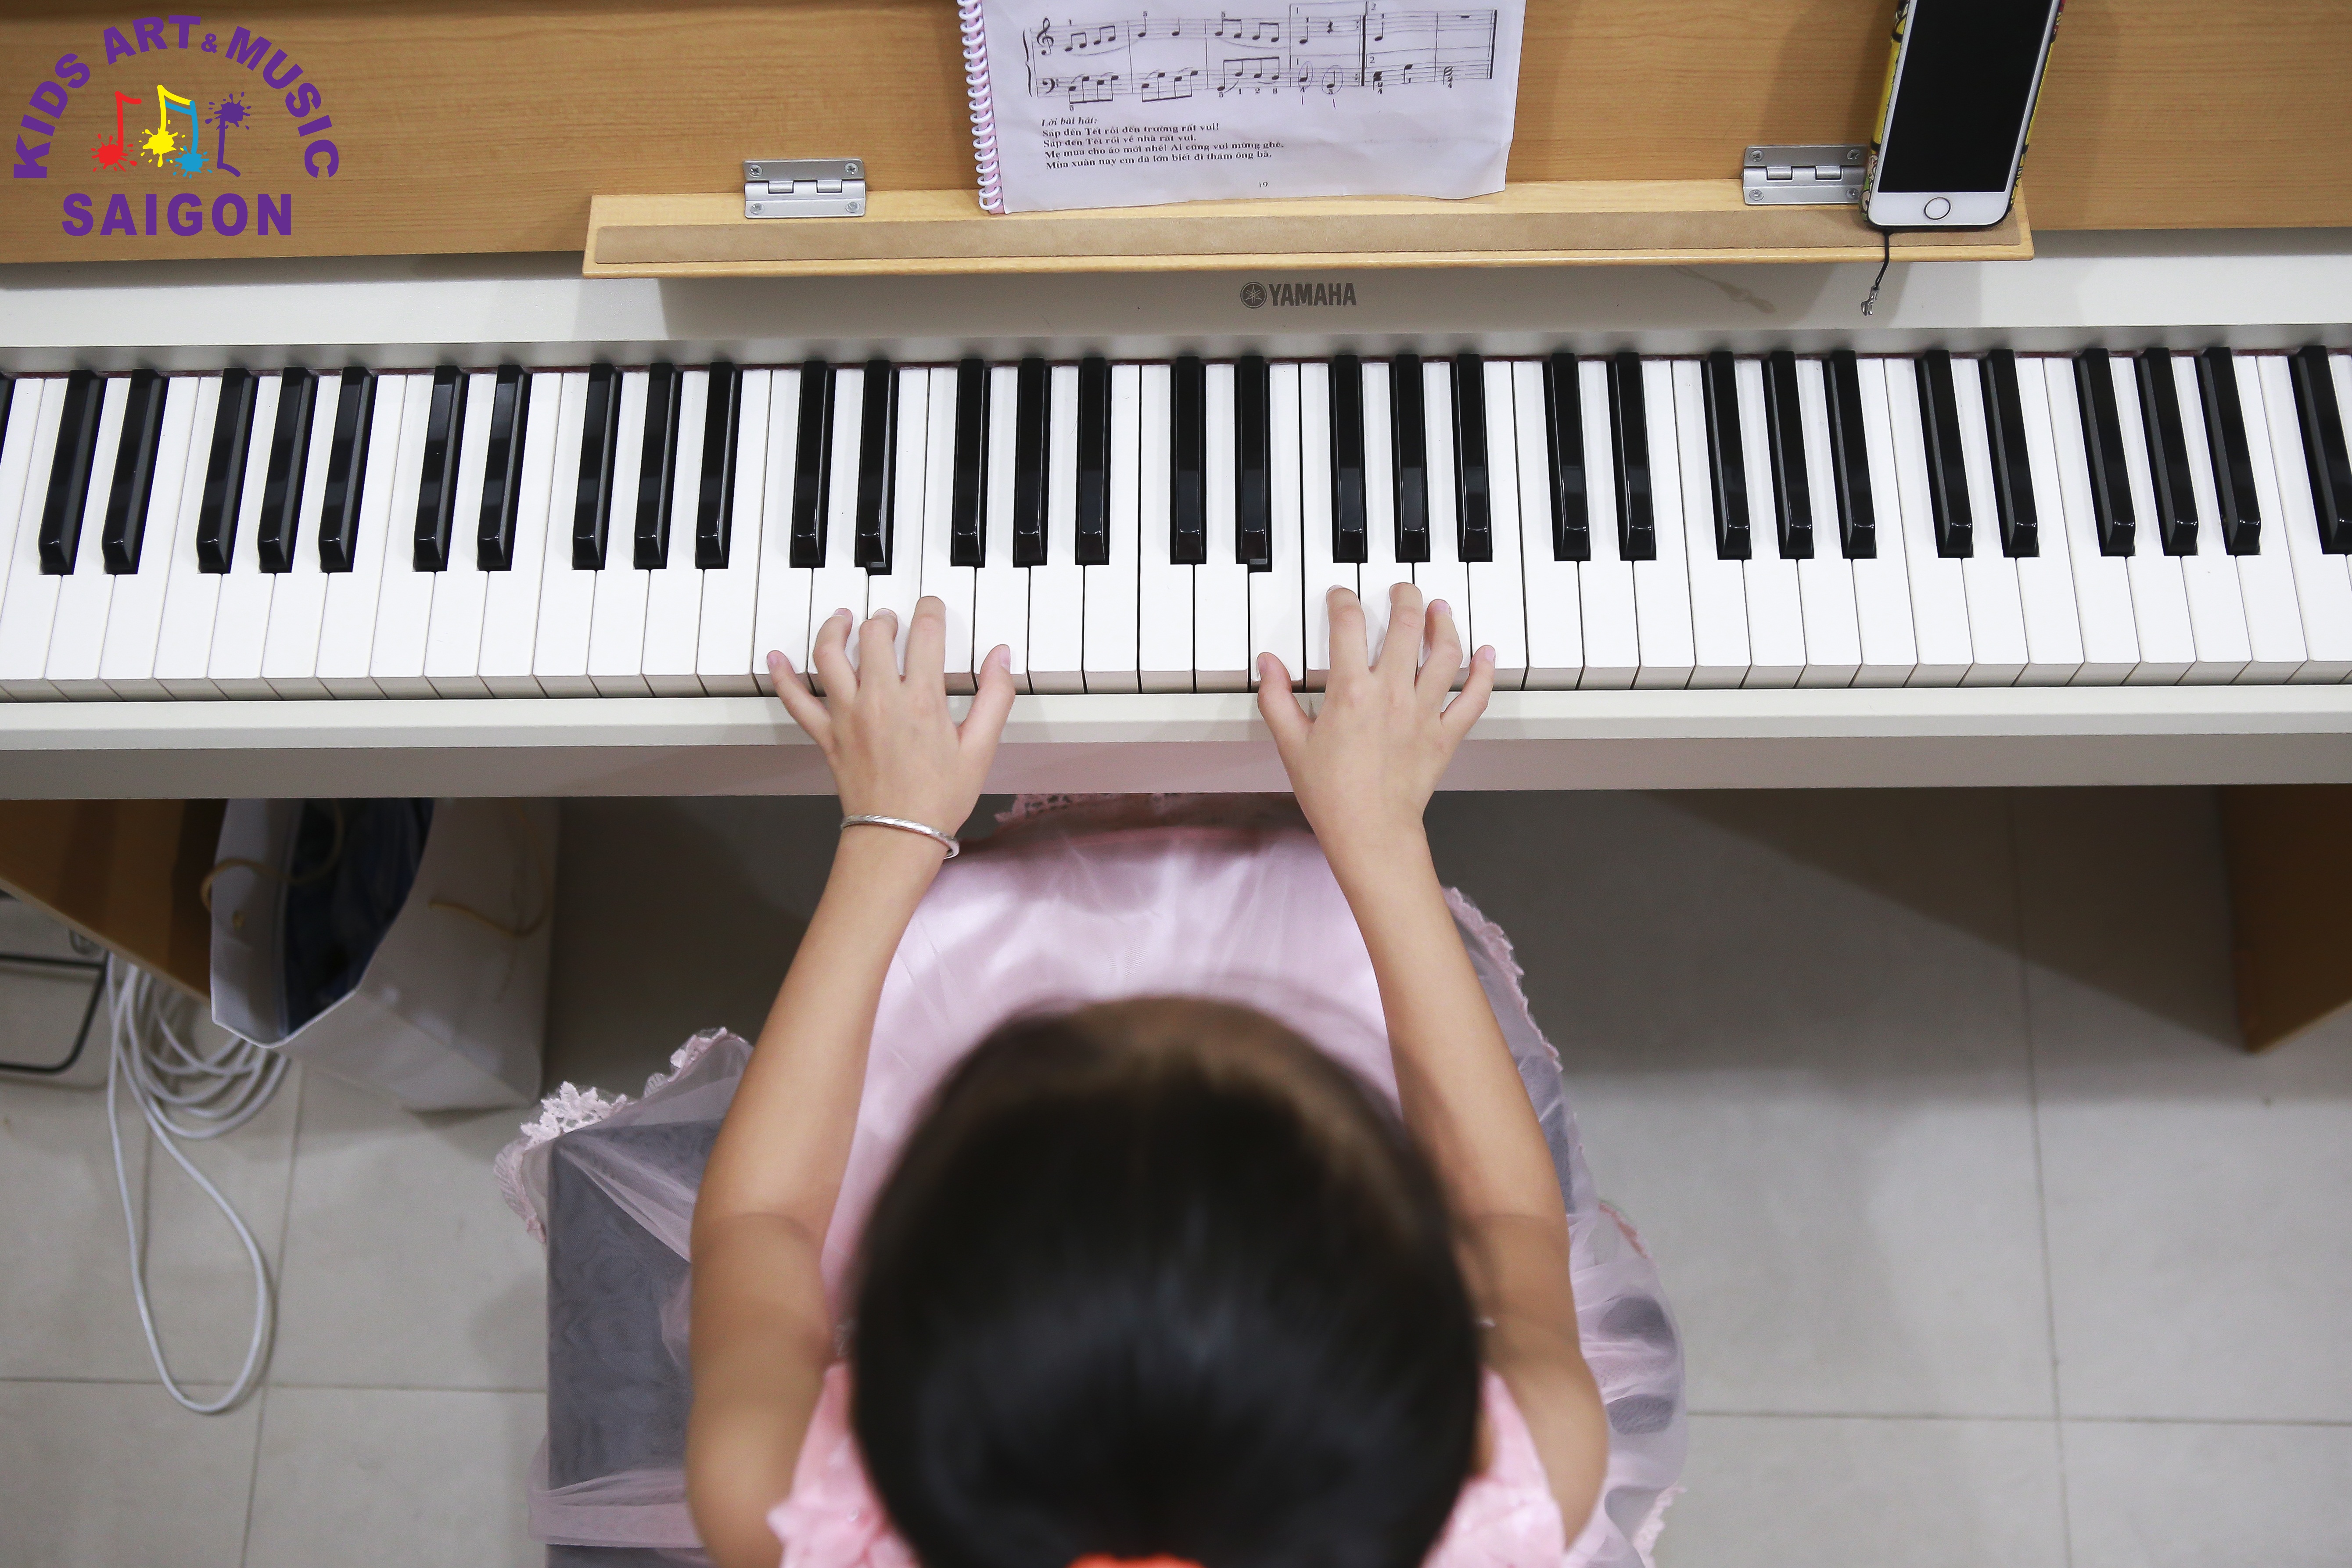 Mách ba mẹ các phương pháp dạy piano cho trẻ tại nhà hiệu quả nhất - hình ảnh 3